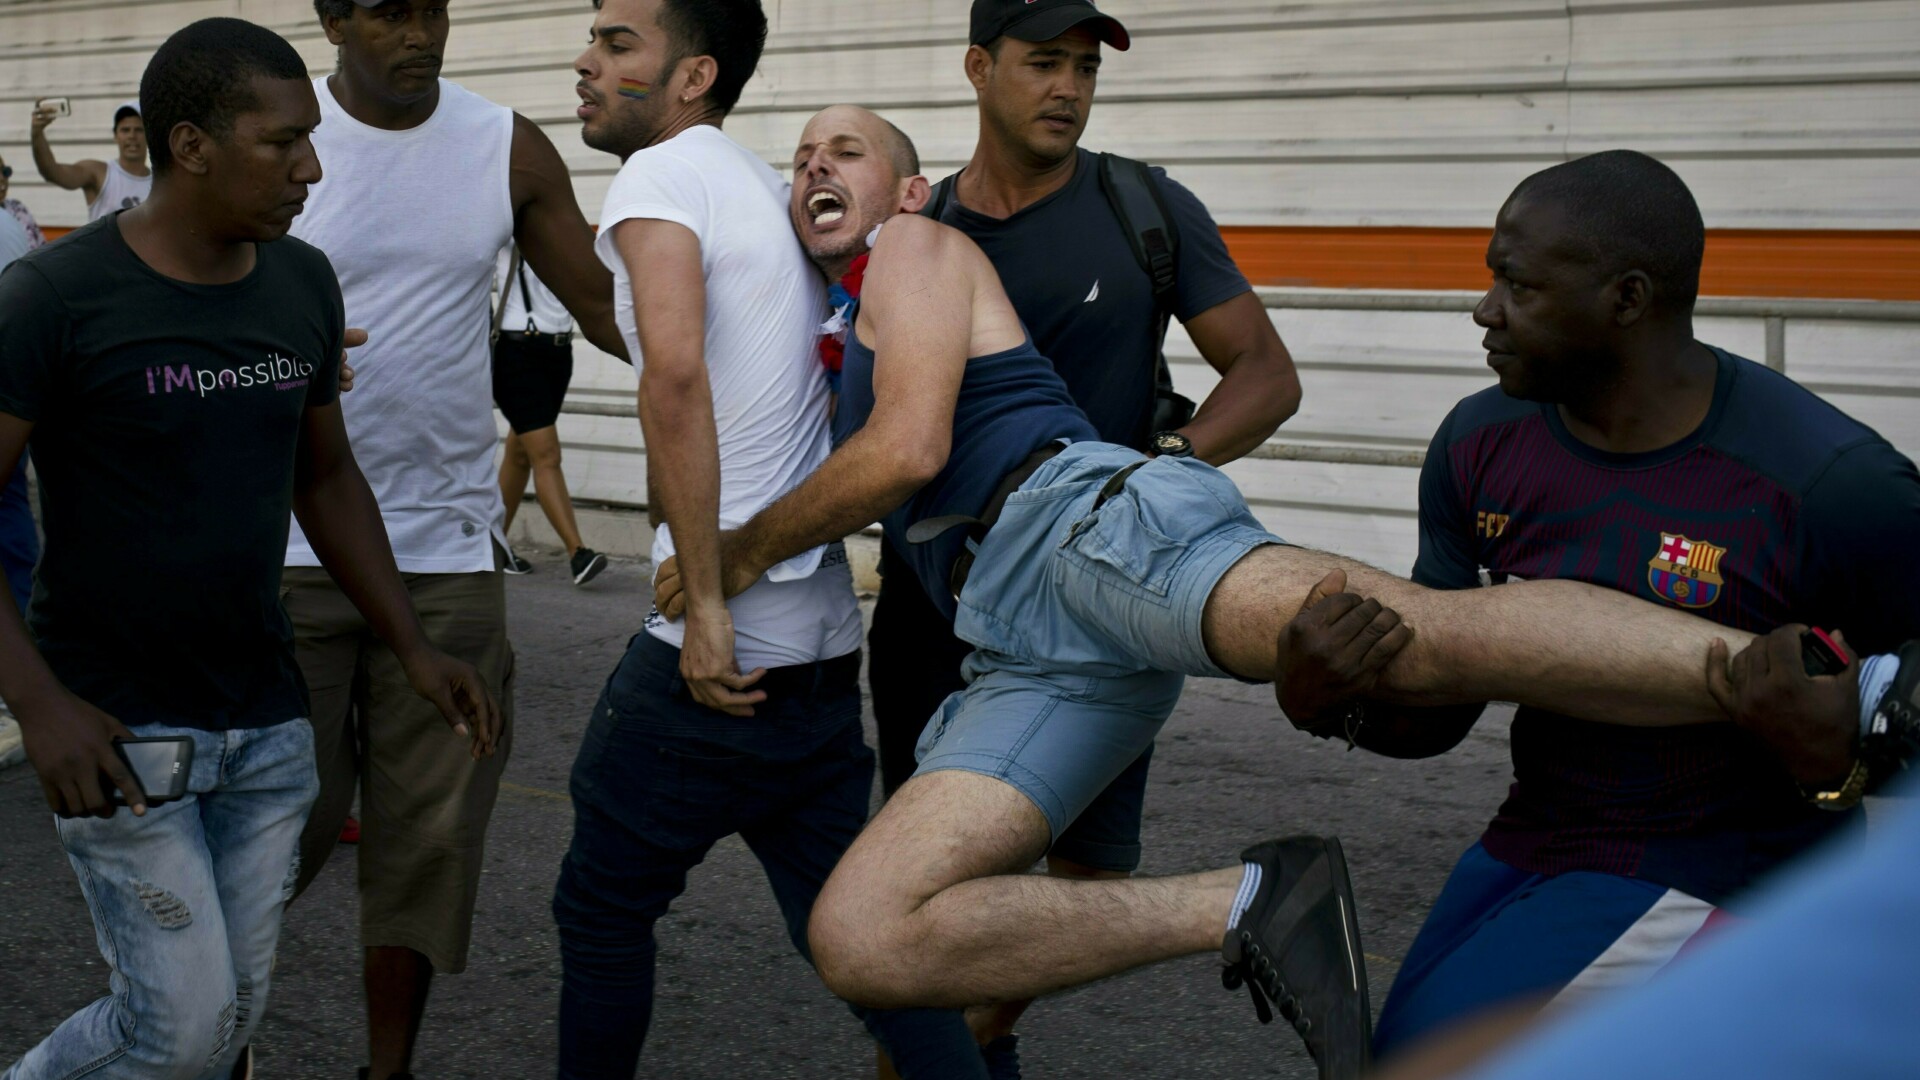 Poliţia întrerupe un marş LGBT în Cuba